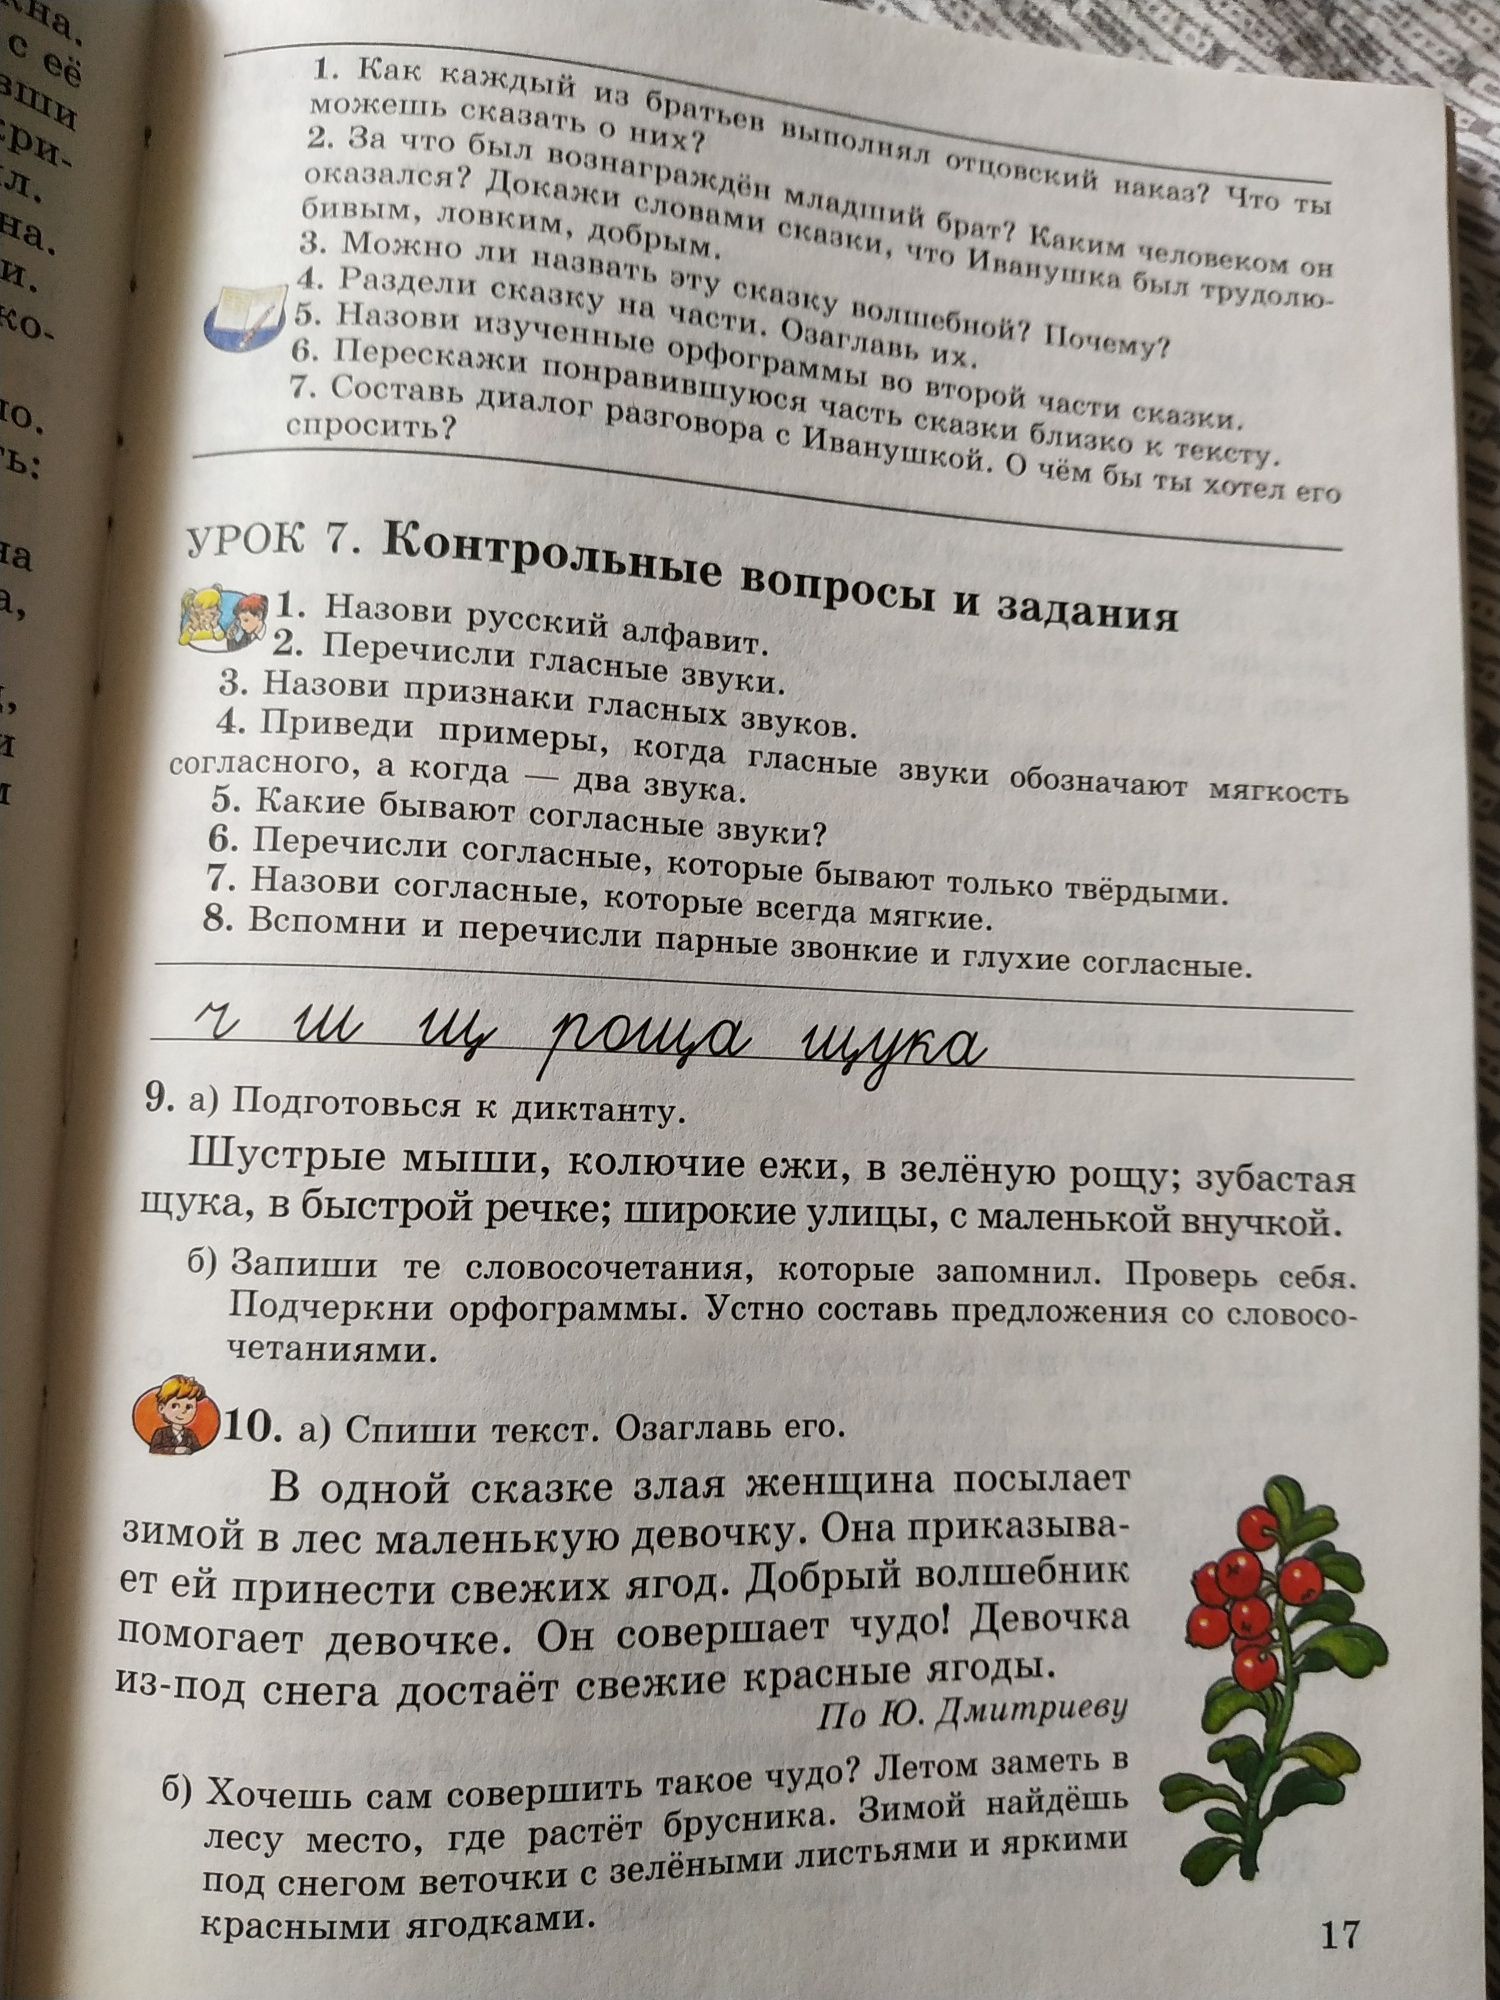 Русский язык, грамматика, задания стихи и рассказы В.А. Анисимова